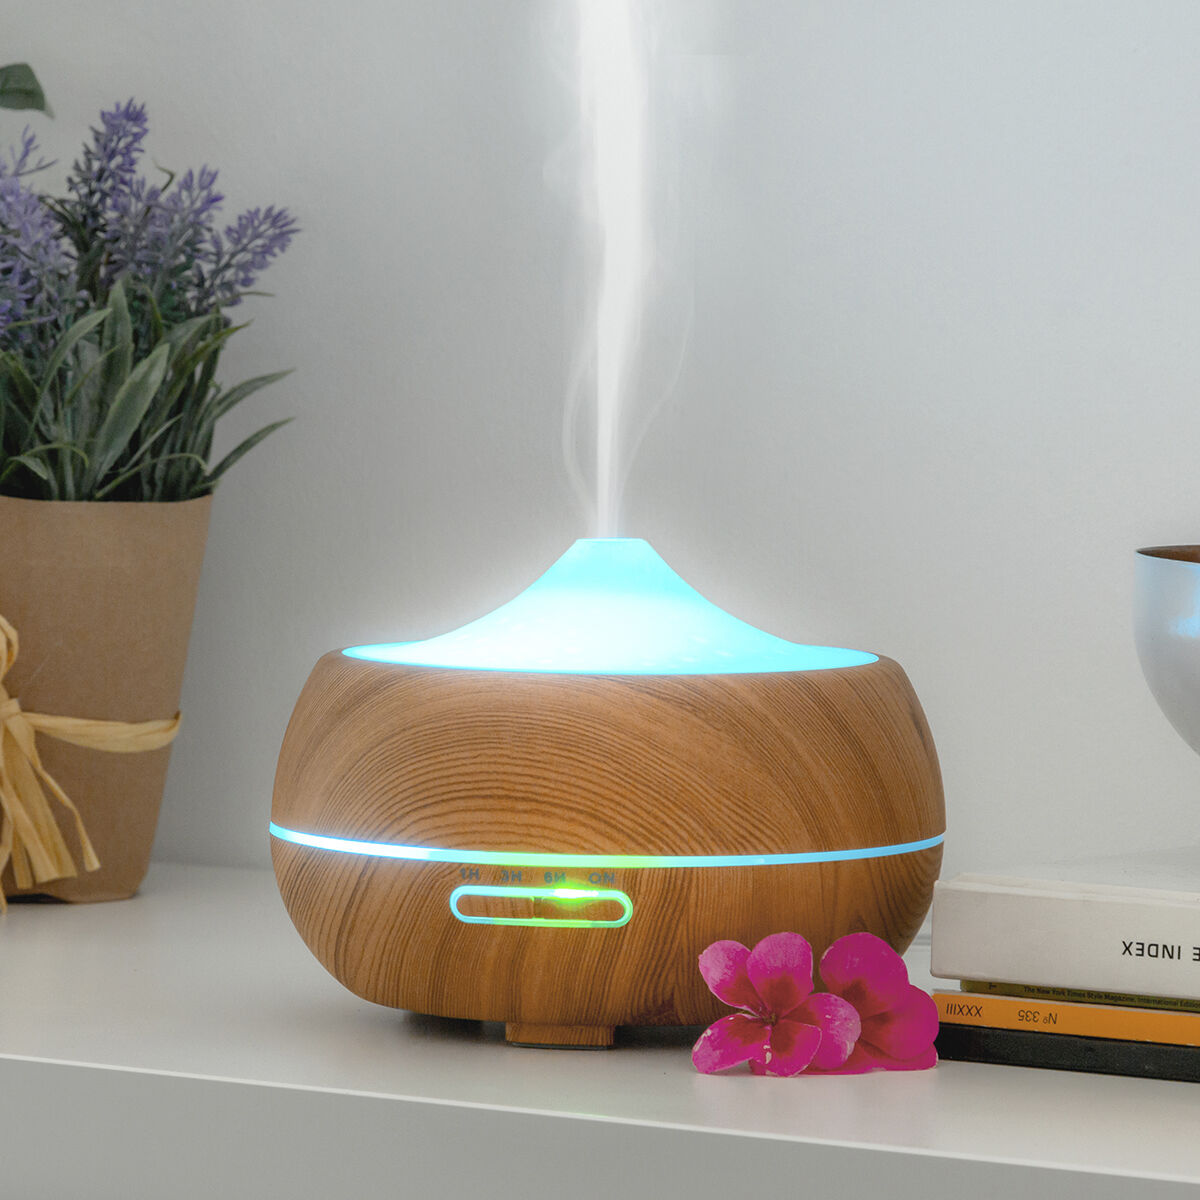 InnovaGoods Wooden-Effect Luchtbevochtiger met Aromatherapie